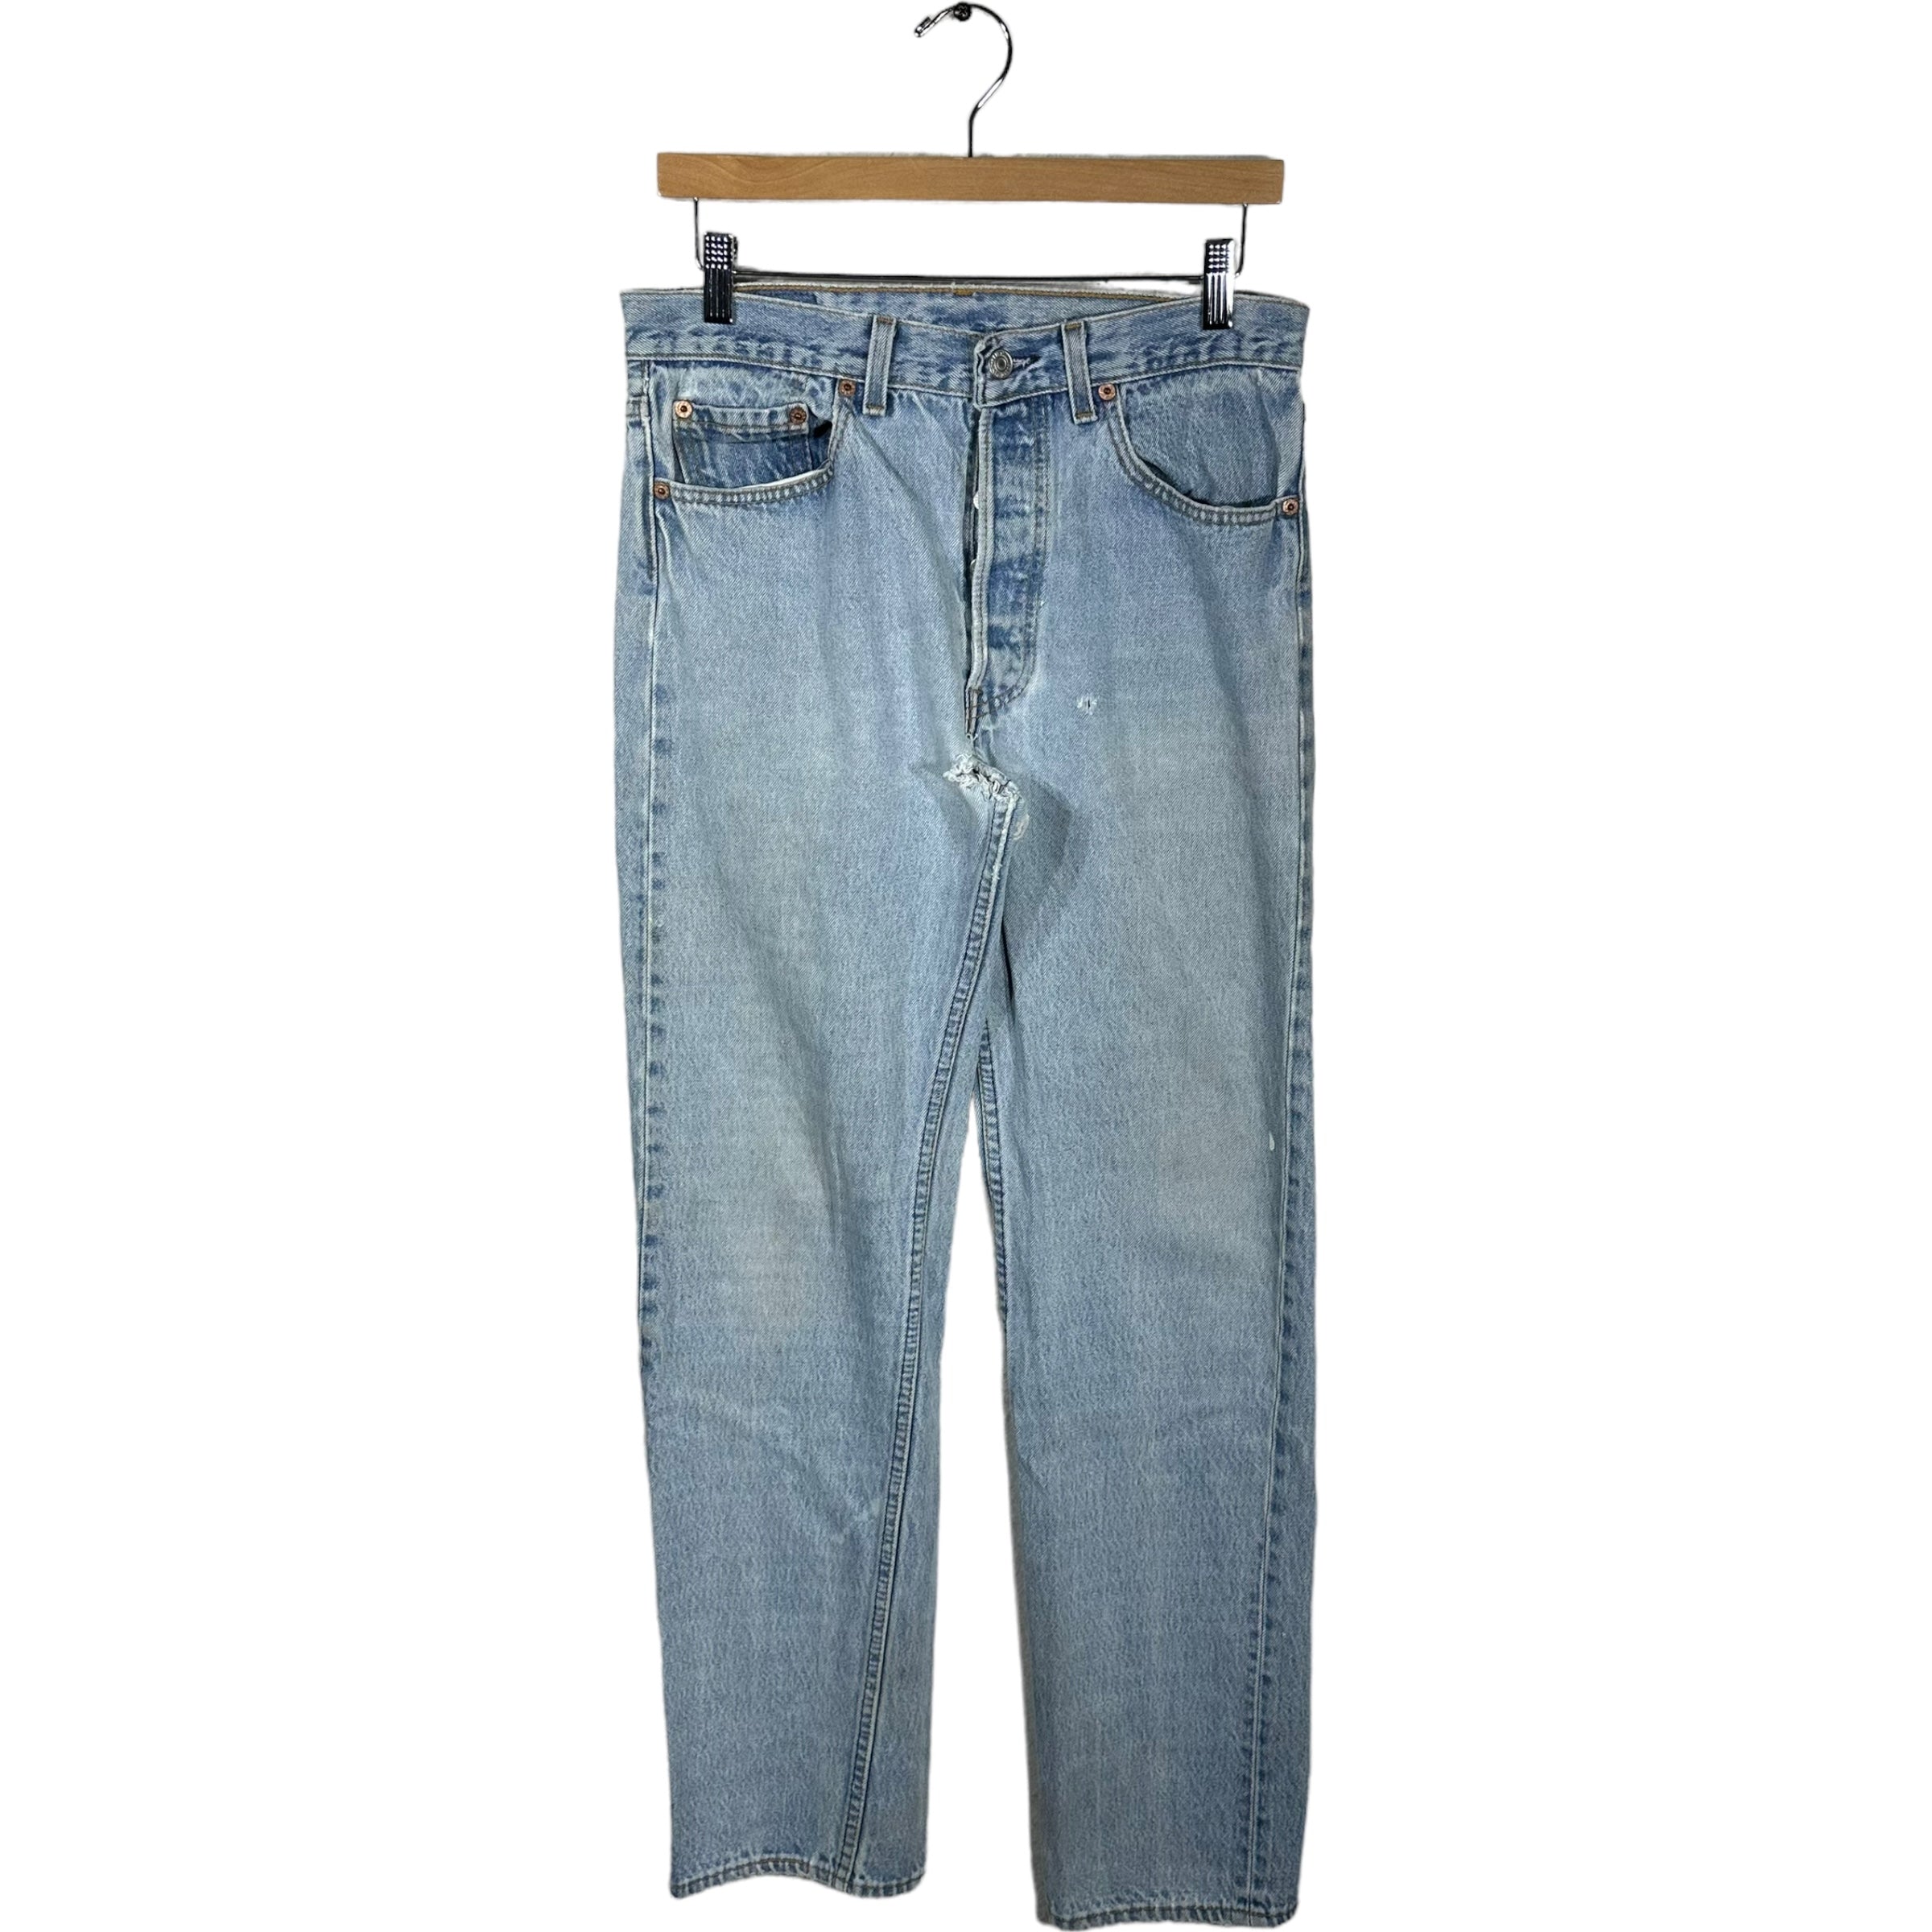 Vintage Levis 501 Jeans